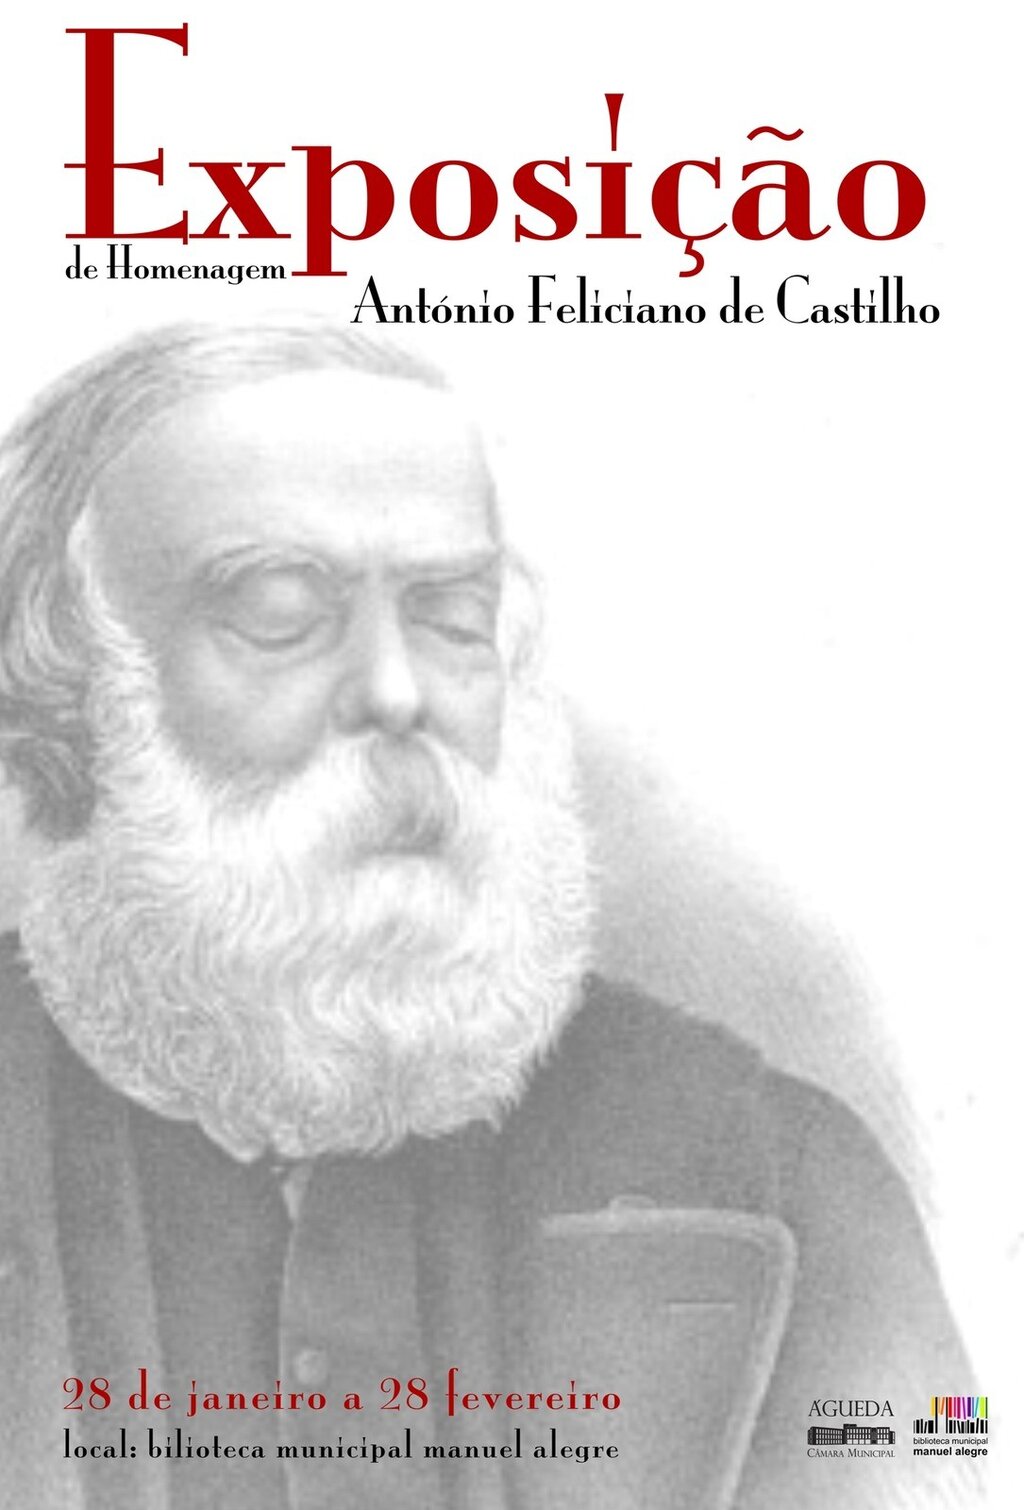 Inauguração de exposição de homenagem a António Feliciano de Castilho